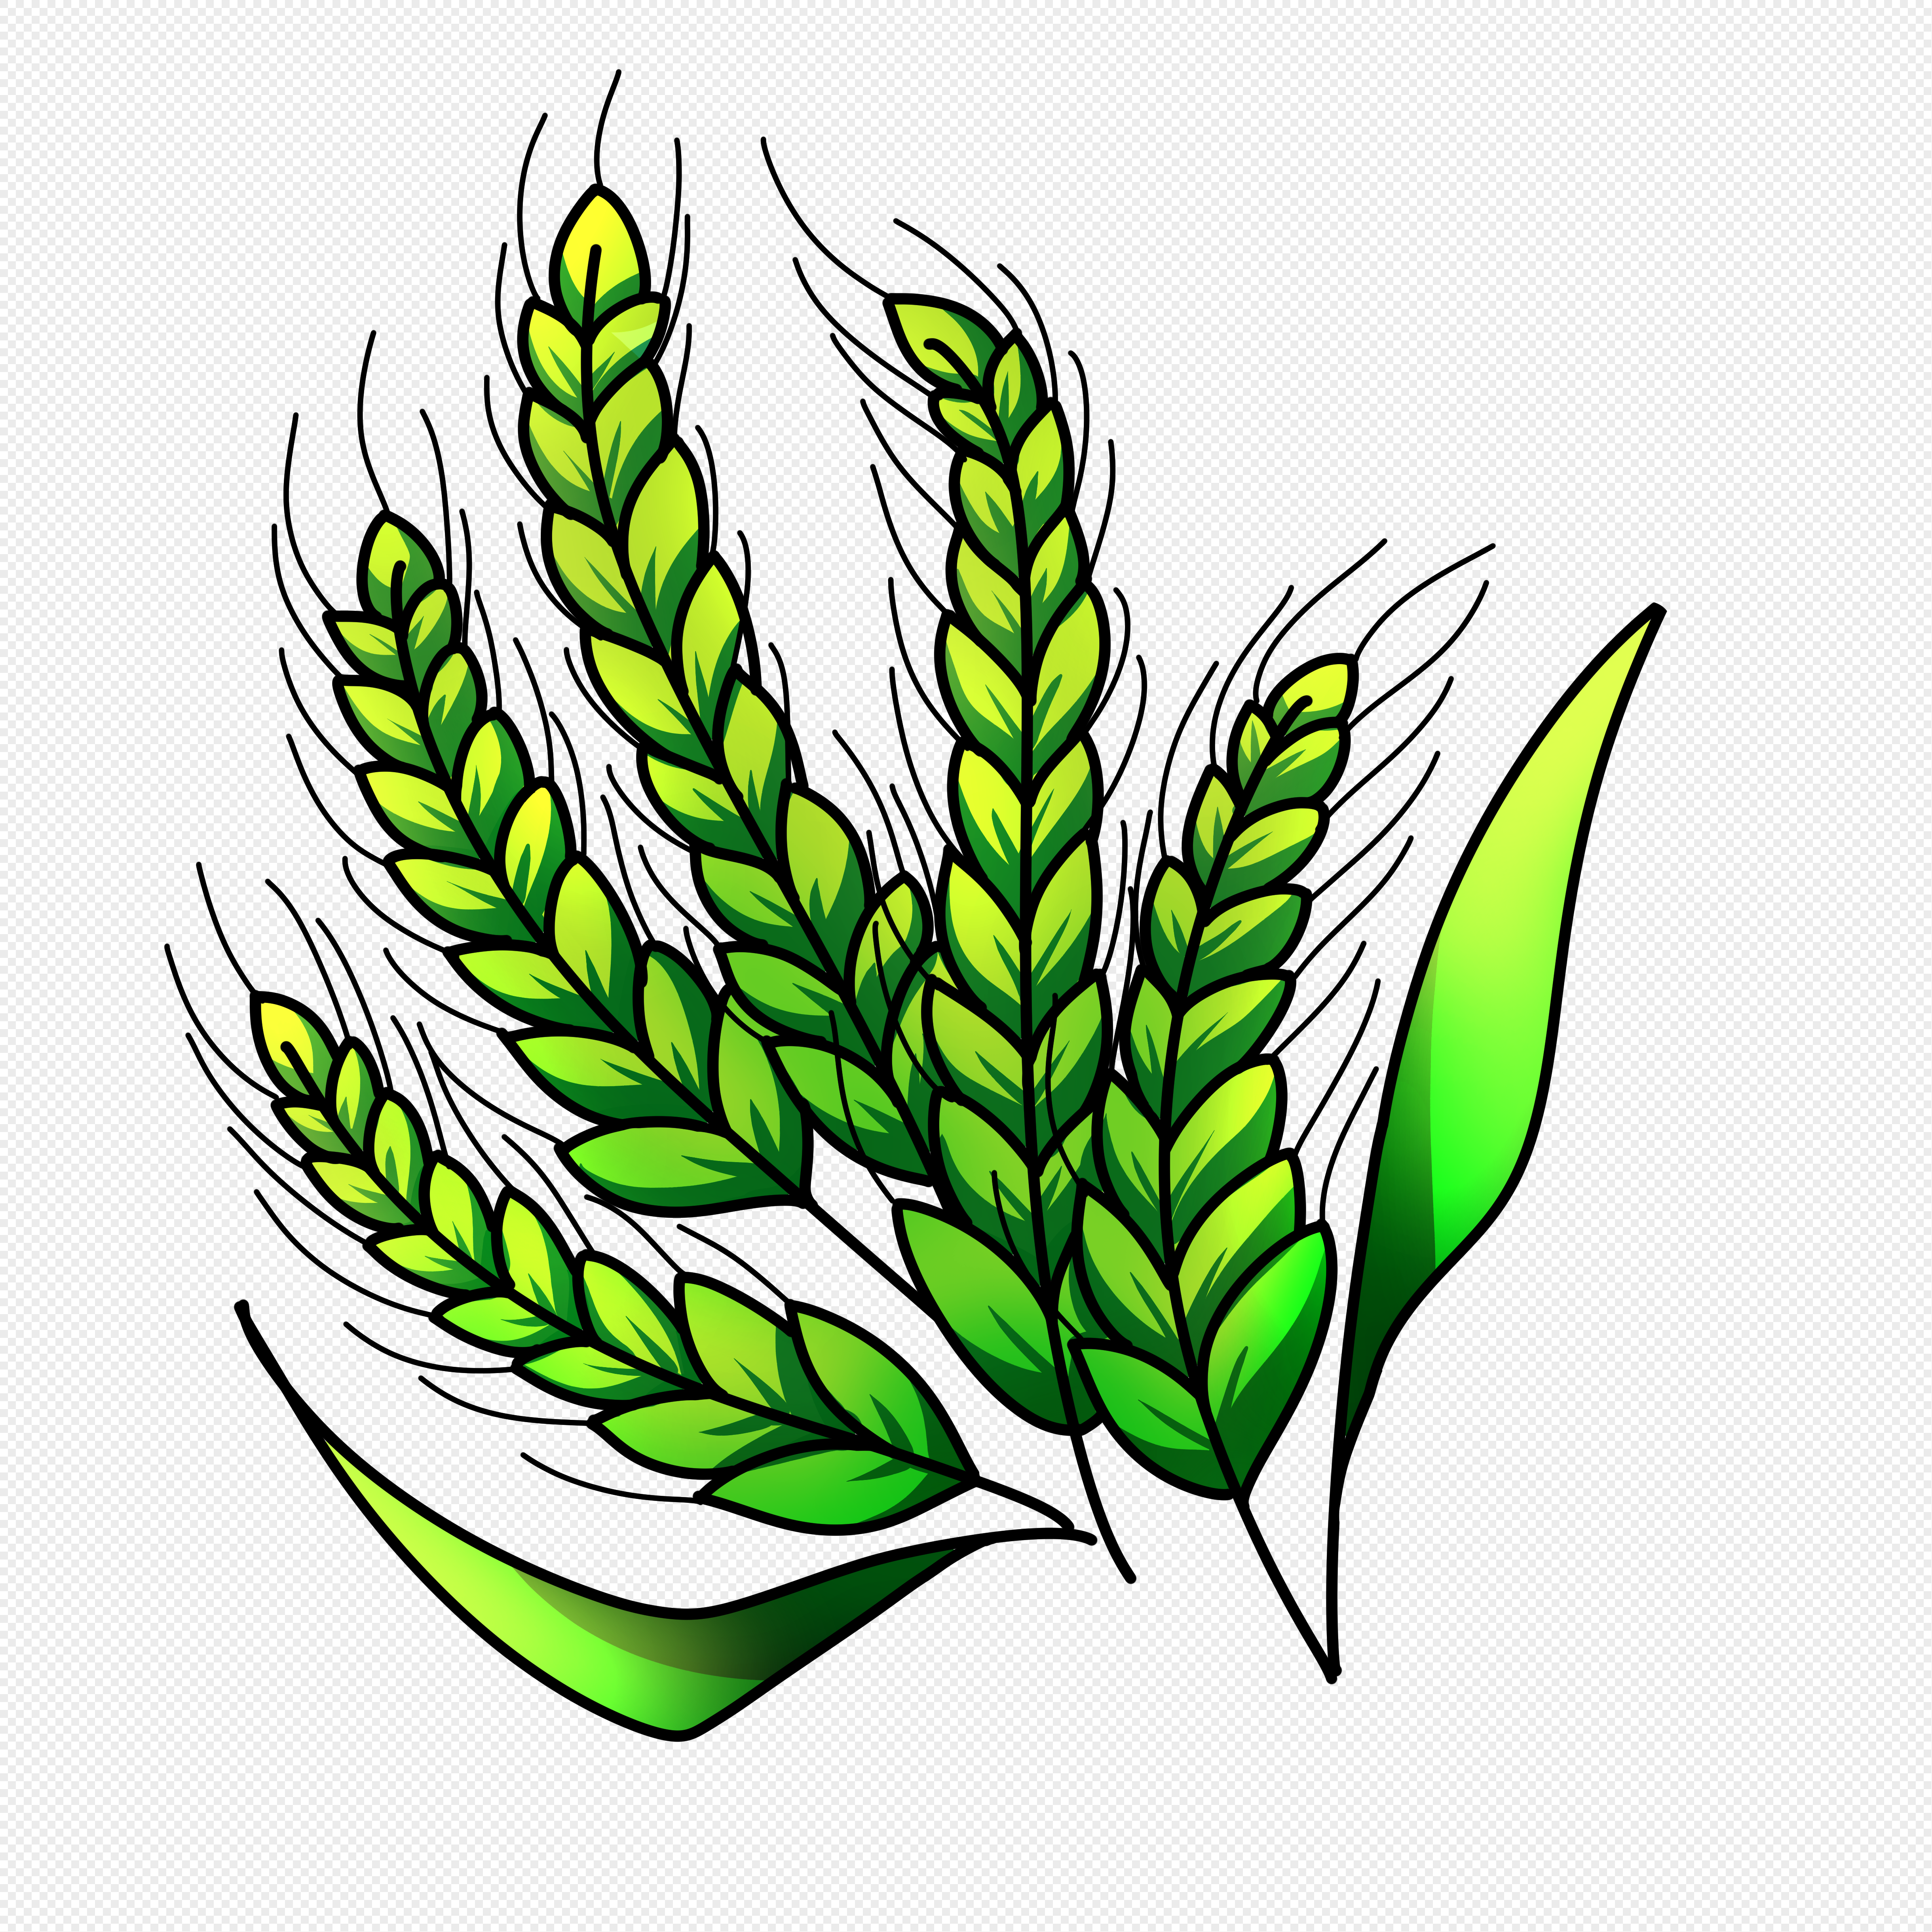 Зеленый Колос пшеницы на прозрачном фоне